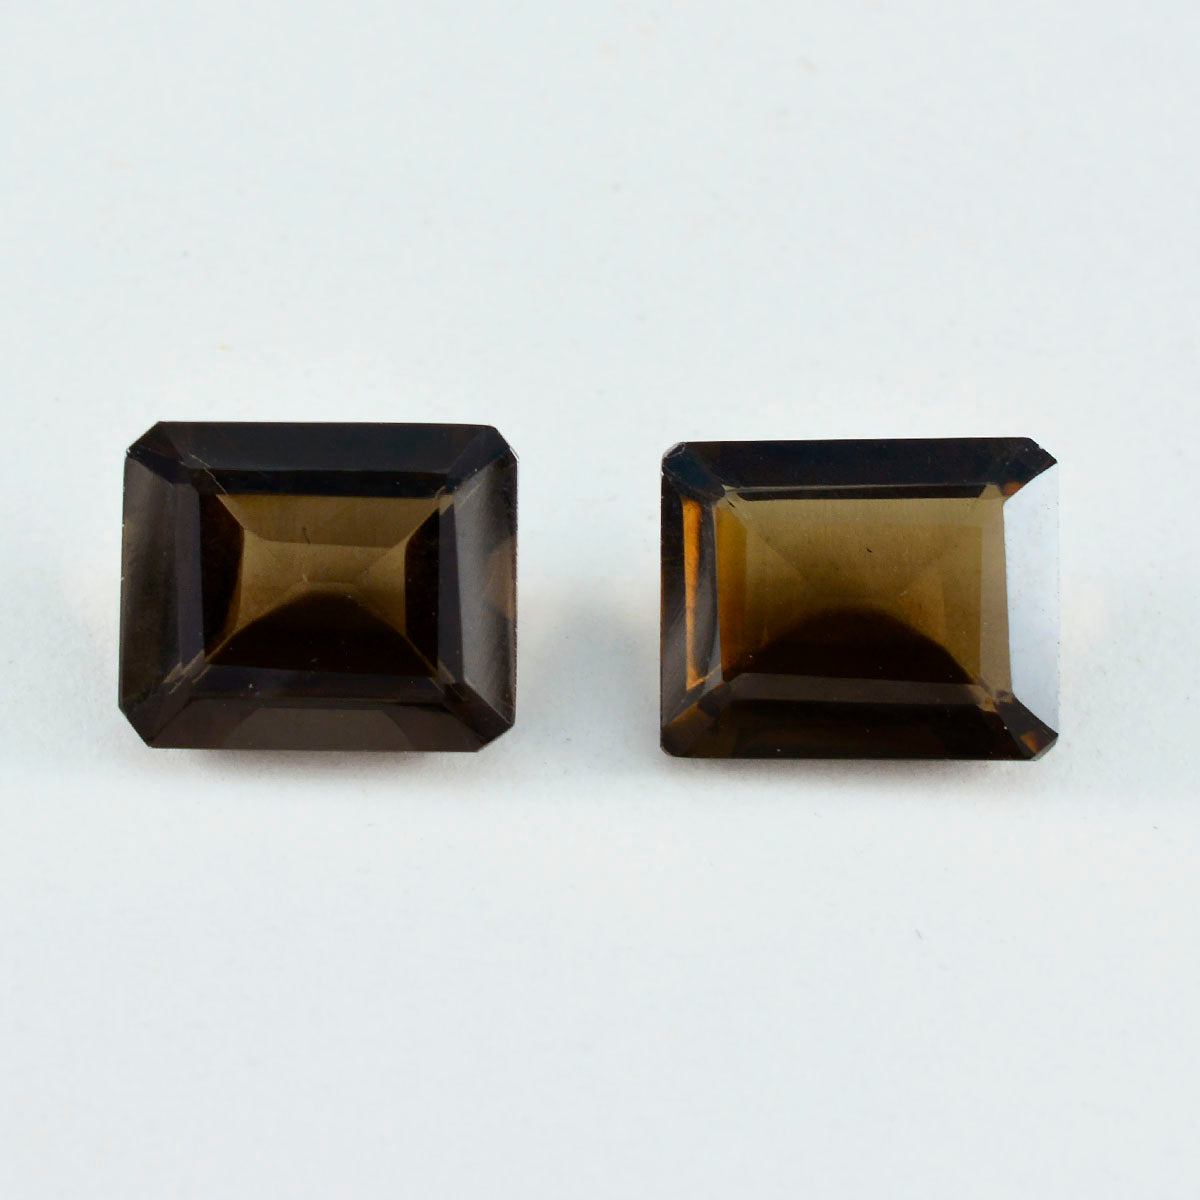 riyogems, 1 шт., настоящий коричневый дымчатый кварц, ограненный 9x11 мм, восьмиугольная форма, милые качественные свободные драгоценные камни